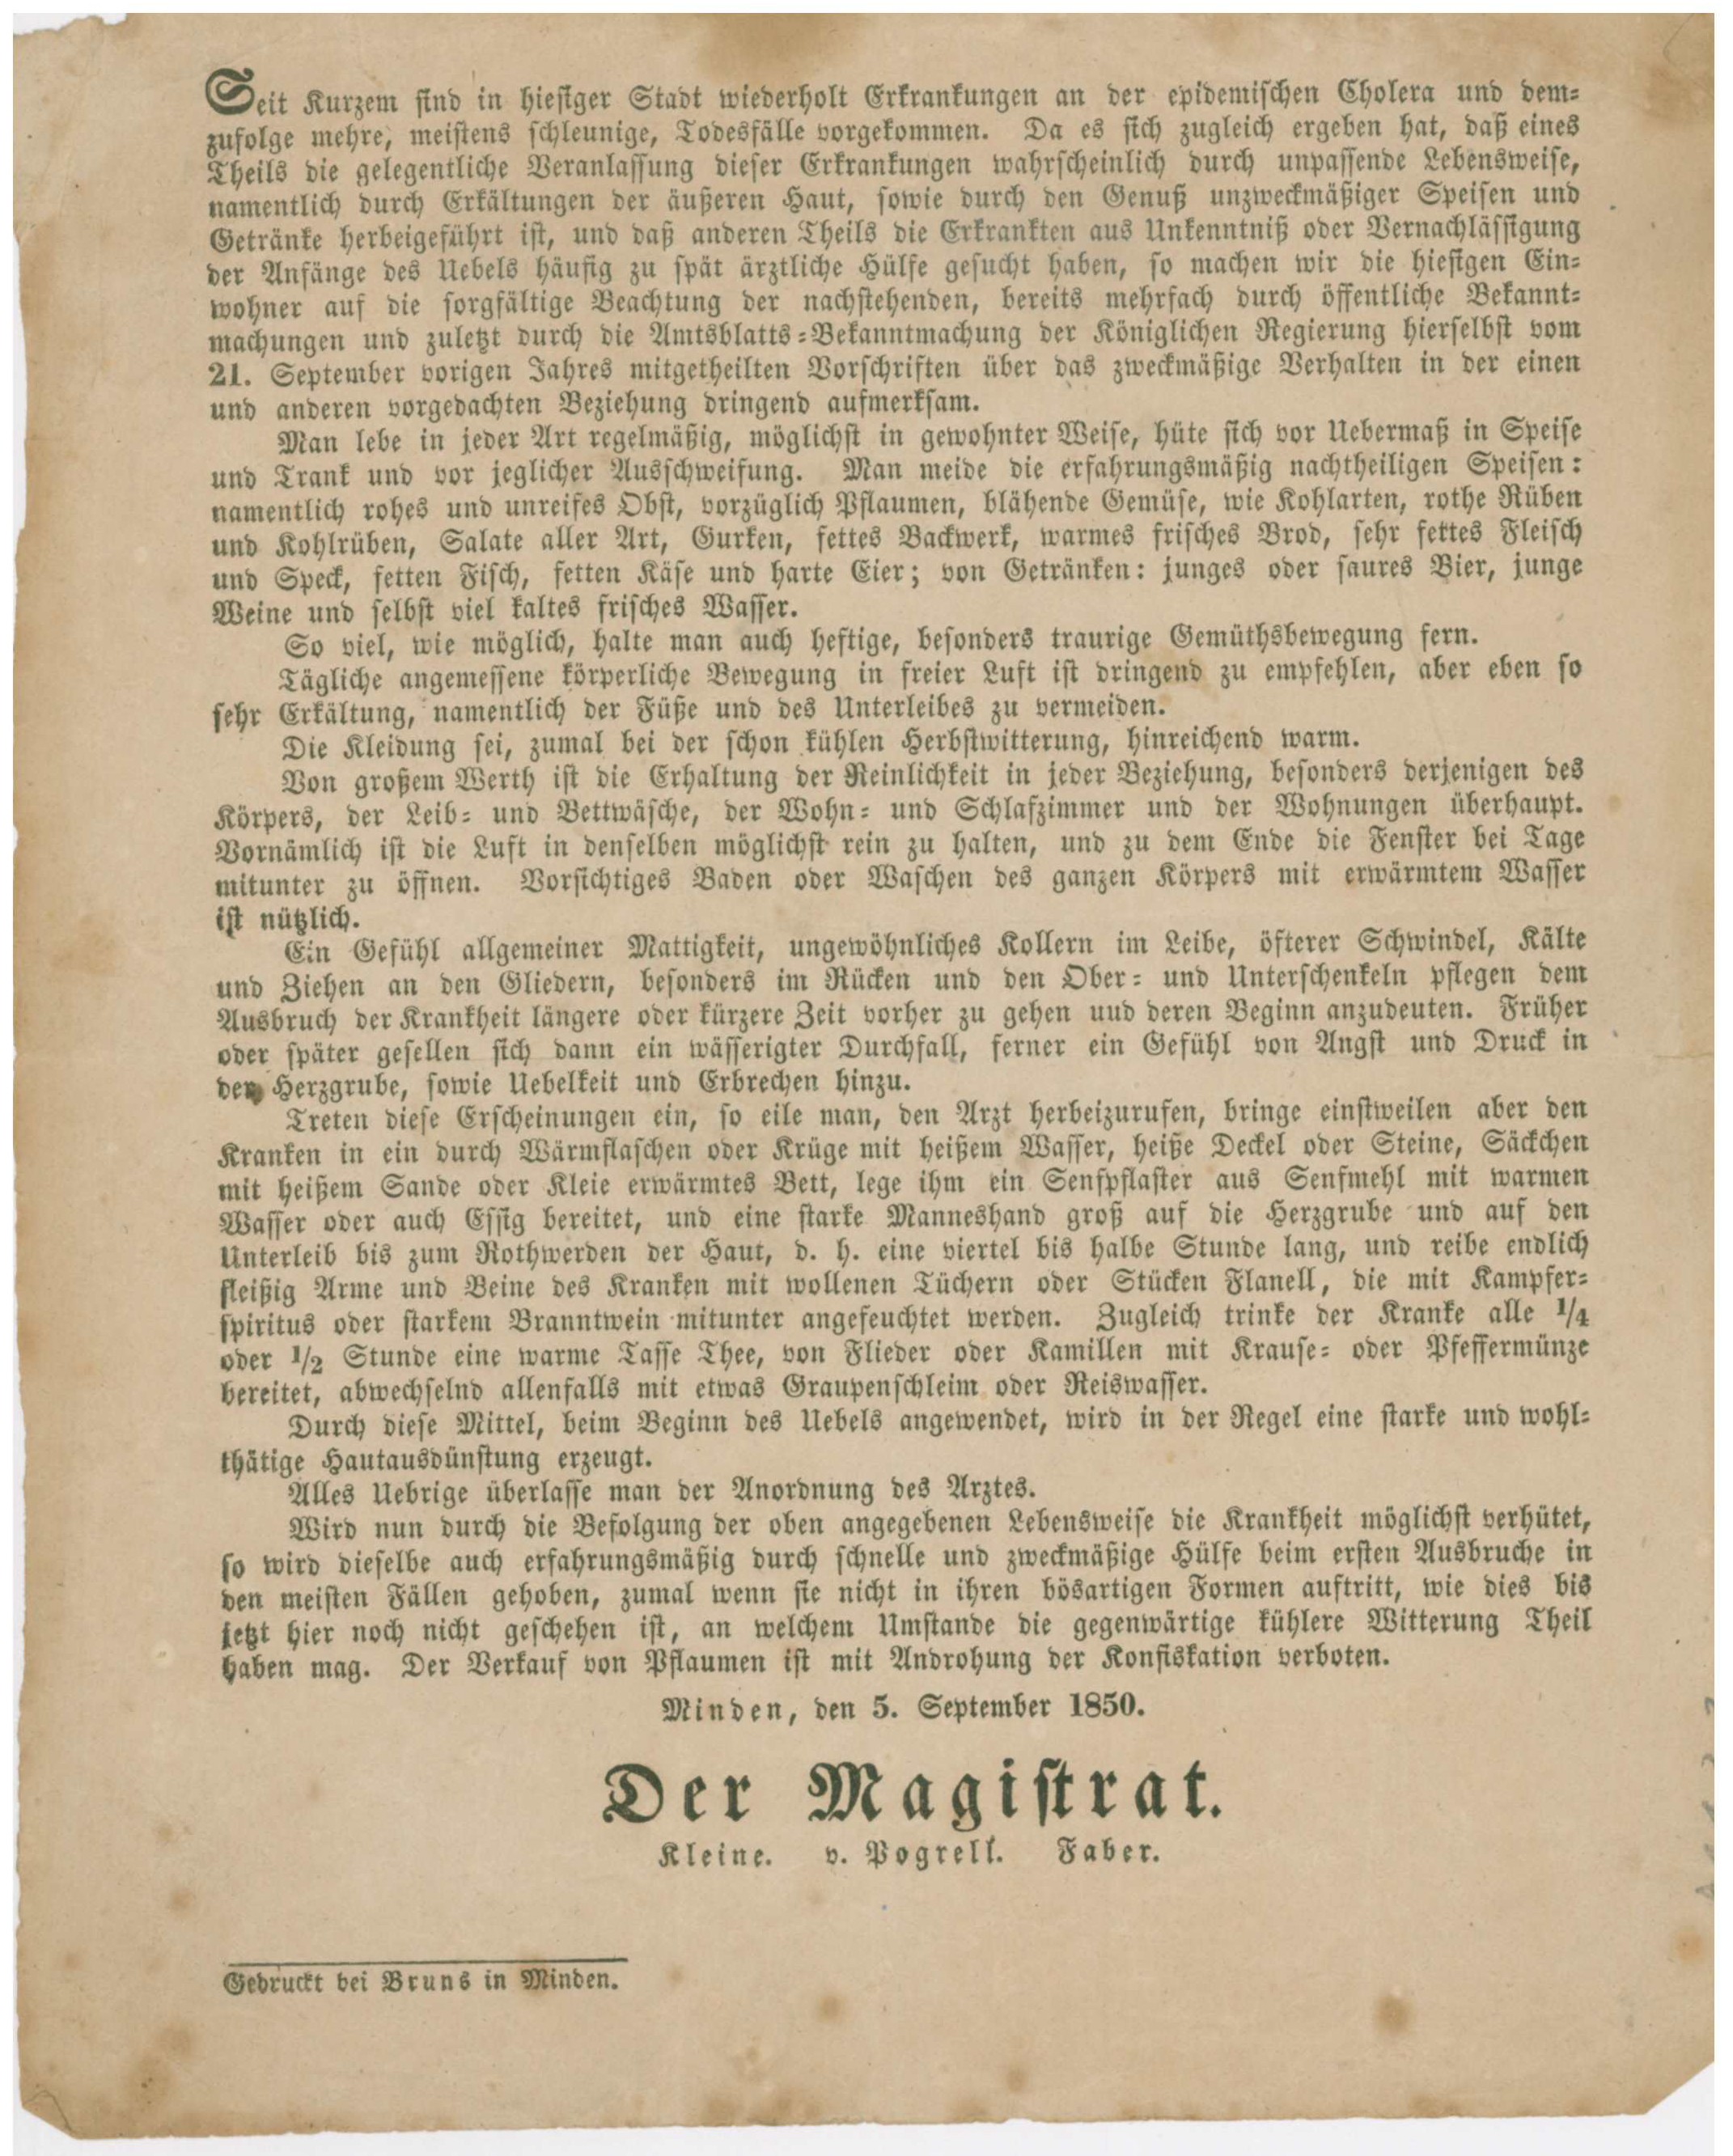 Anordnung des Magistrats zur Cholera Epidemie in Minden im Jahr 1850 (Mindener Museum RR-R)